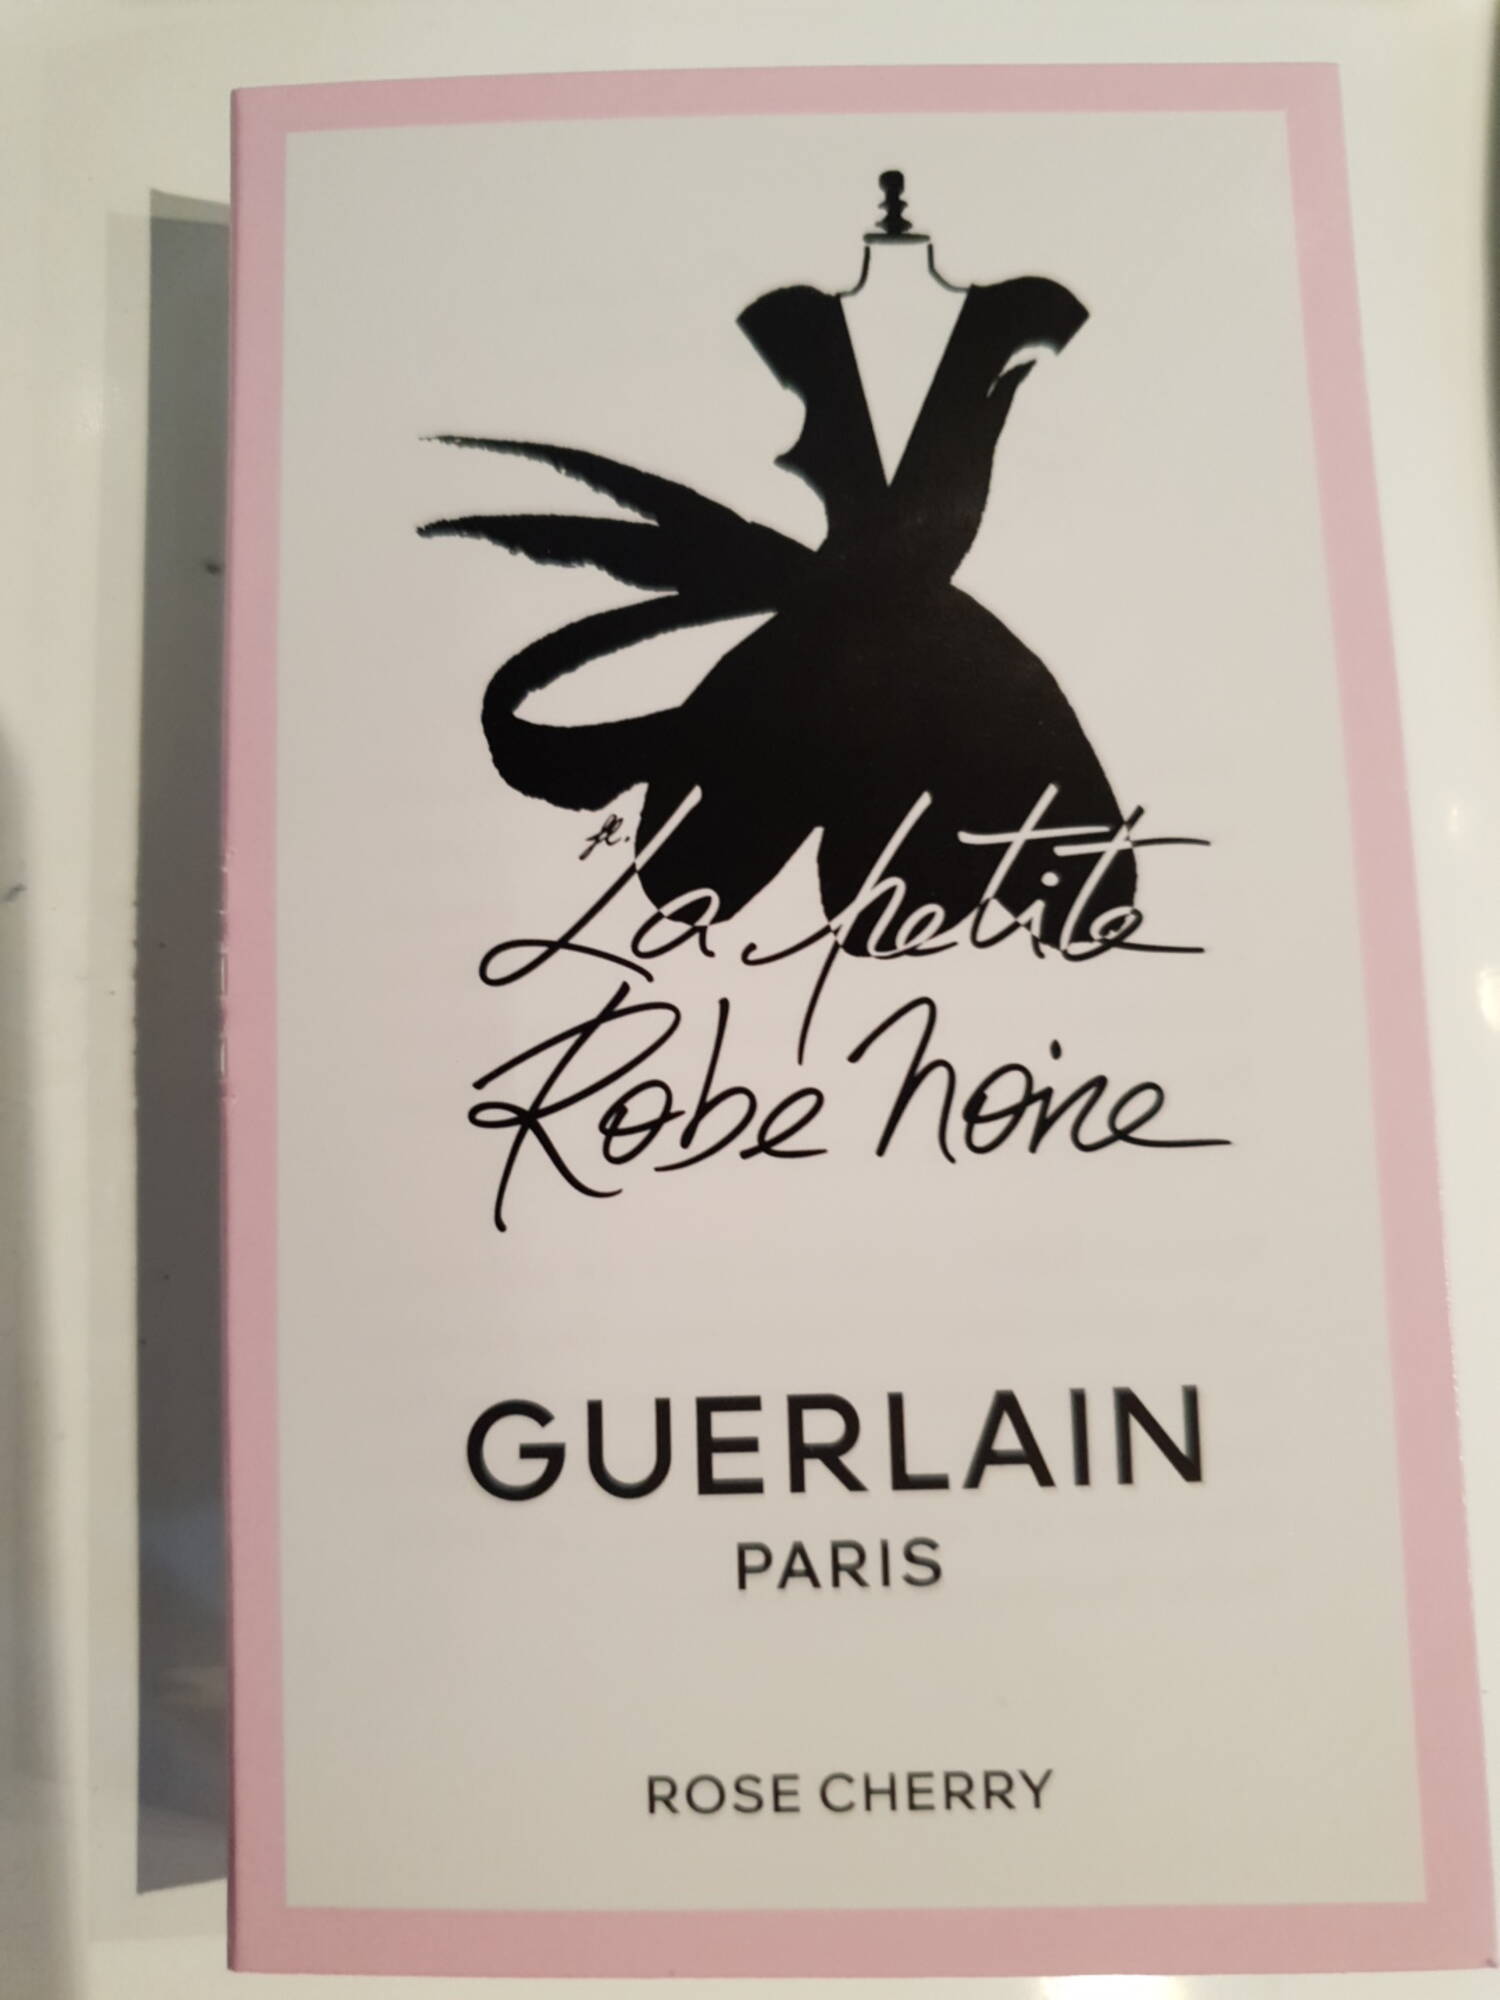 GUERLAIN PARIS - La petite robe noire rose cherry - Eau de parfum